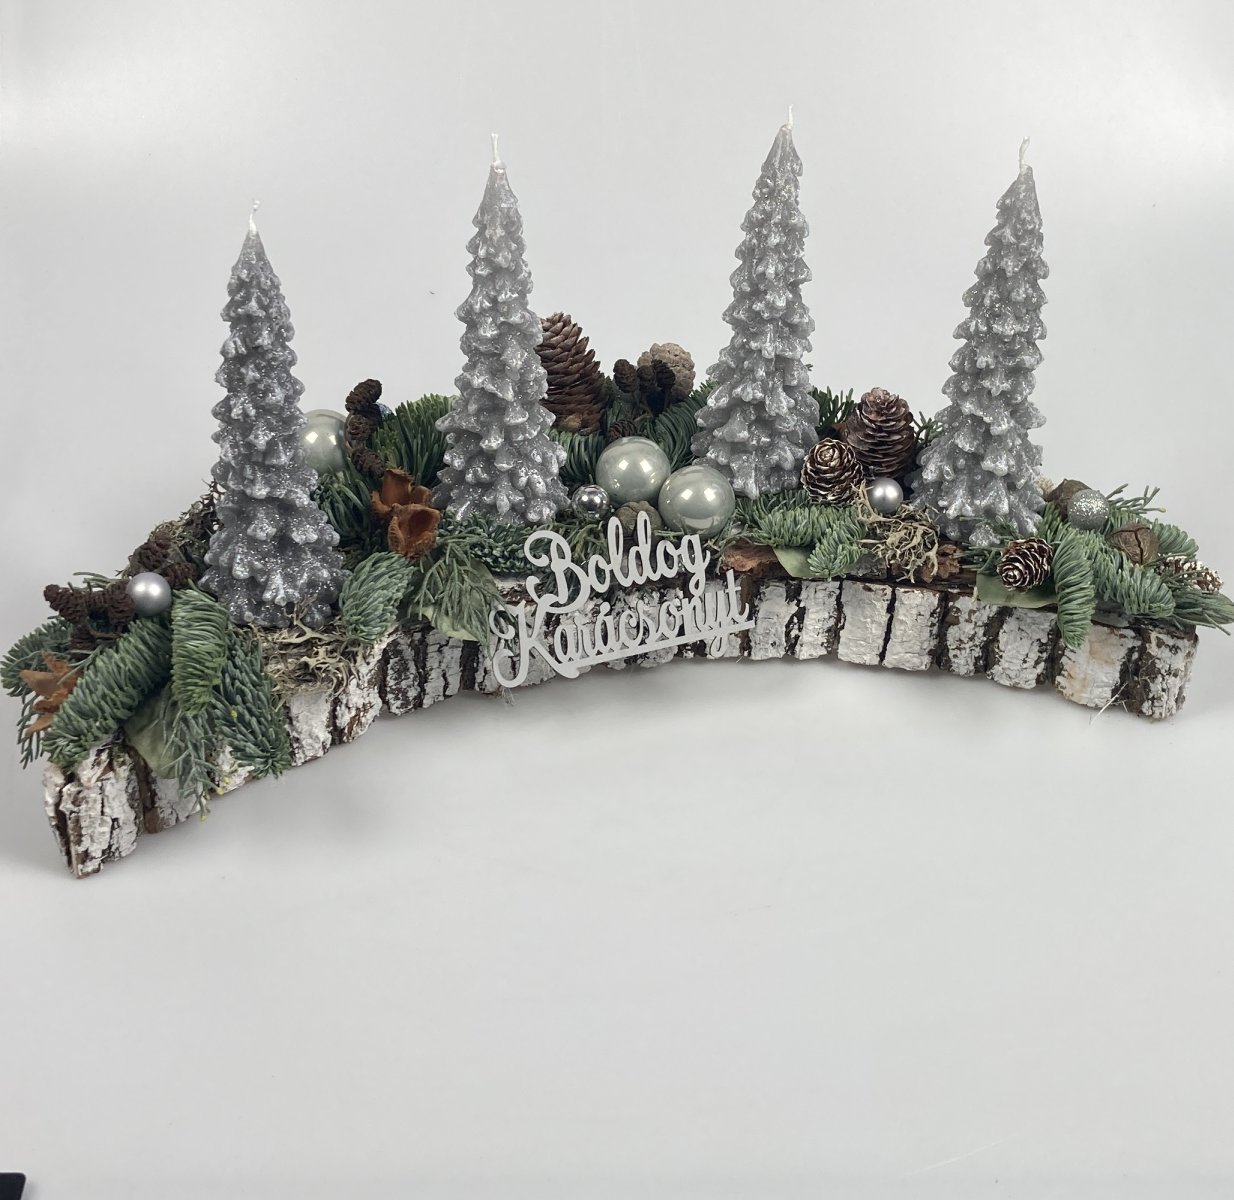 Csillogó fenyőerdő - fenyőgyertyás, 40 cm hosszú, hullám formájú adventi asztaldísz